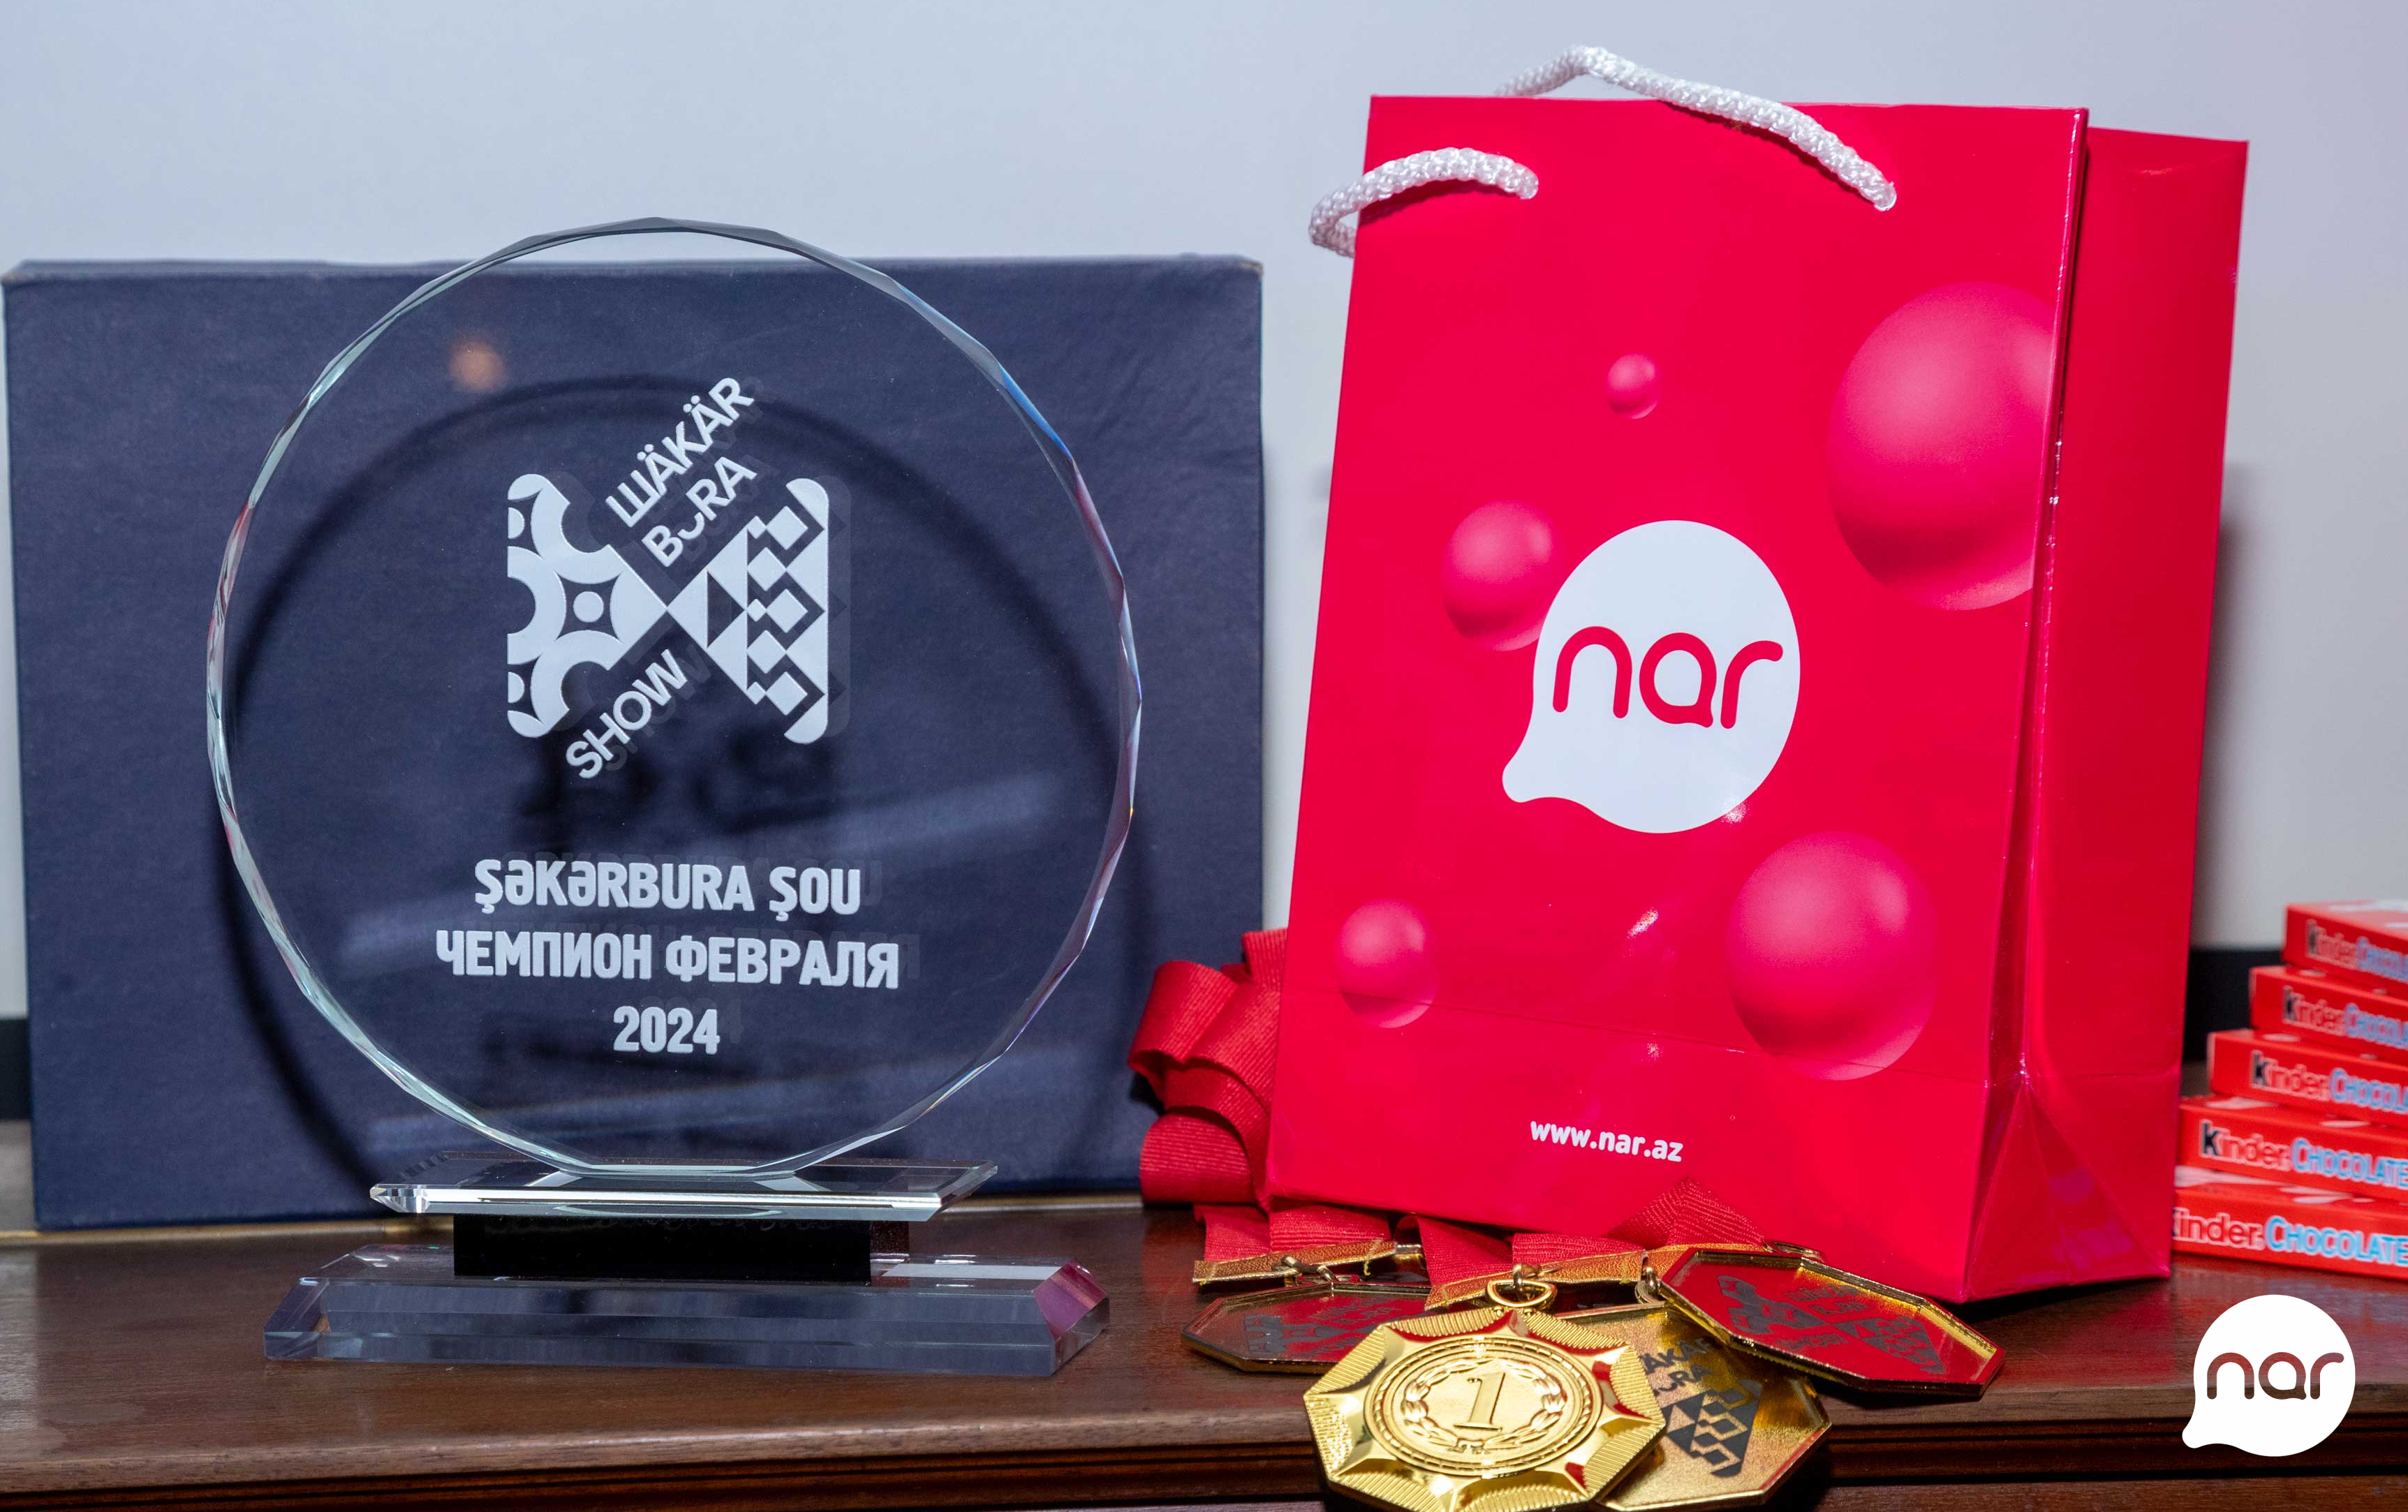 При поддержке Nar прошел финал Олимпийского кубка «Шекербура Шоу»